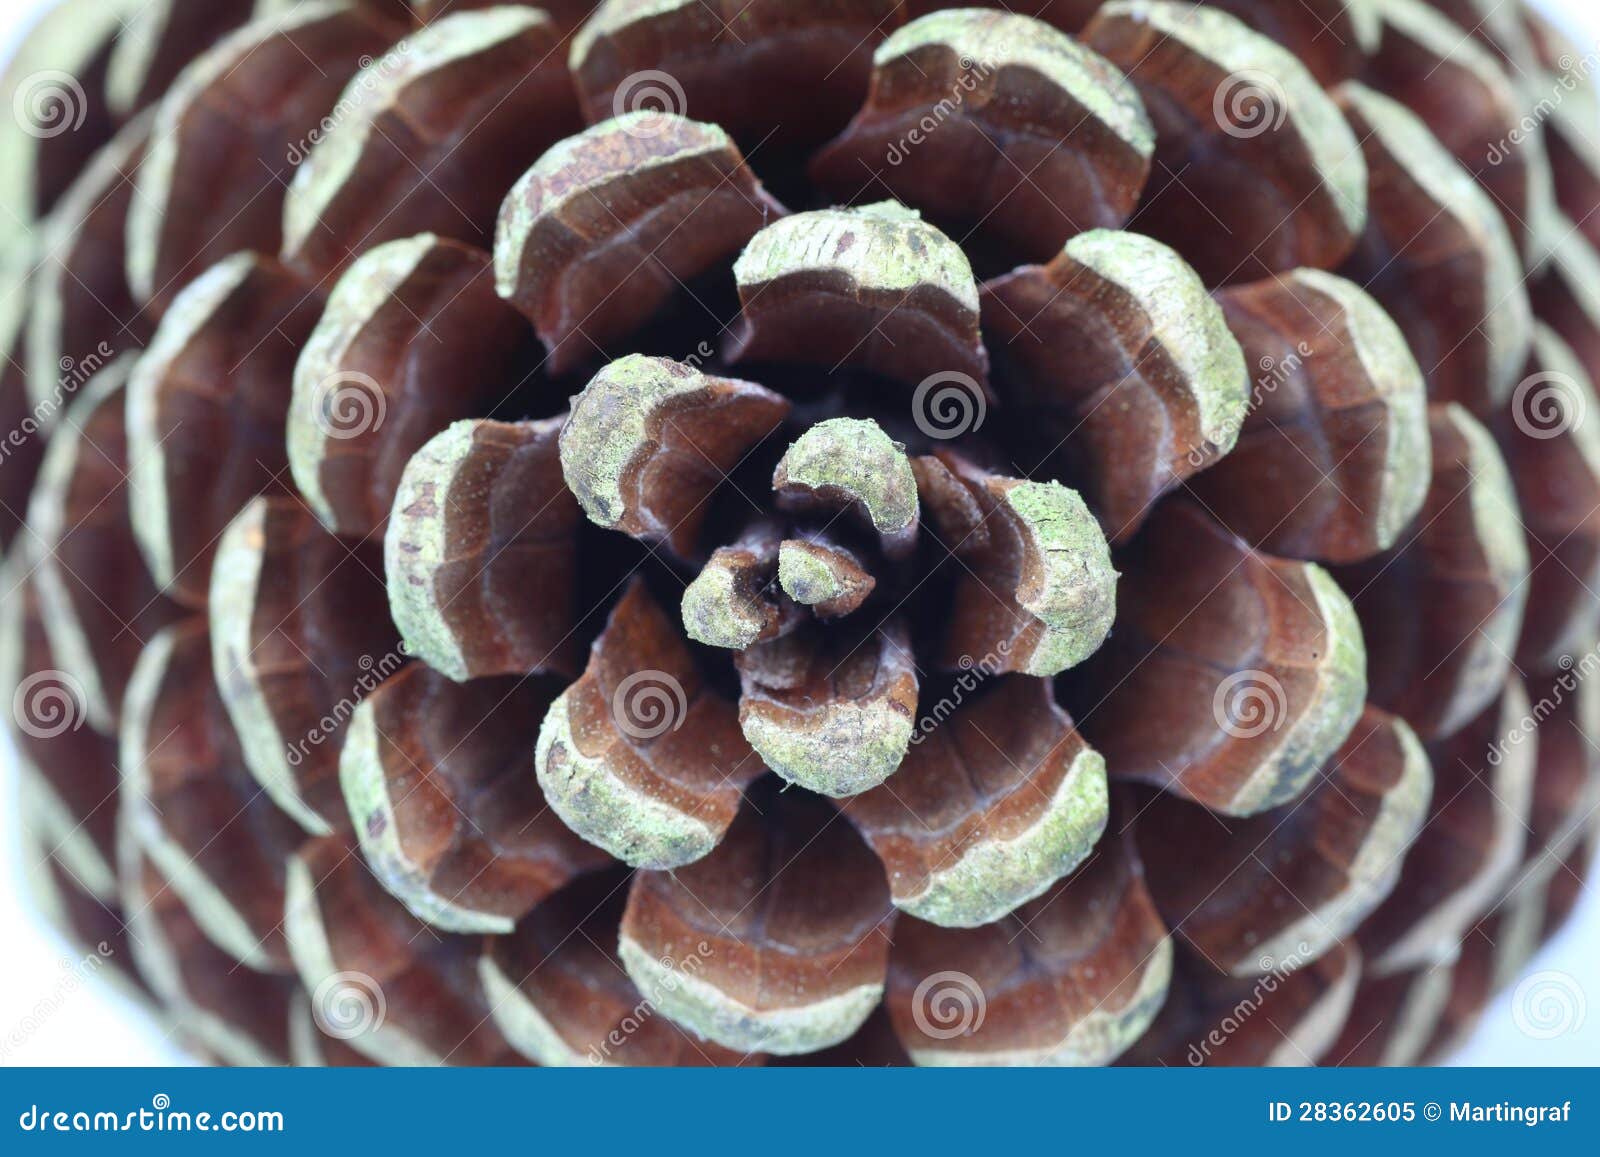 pine cone structure